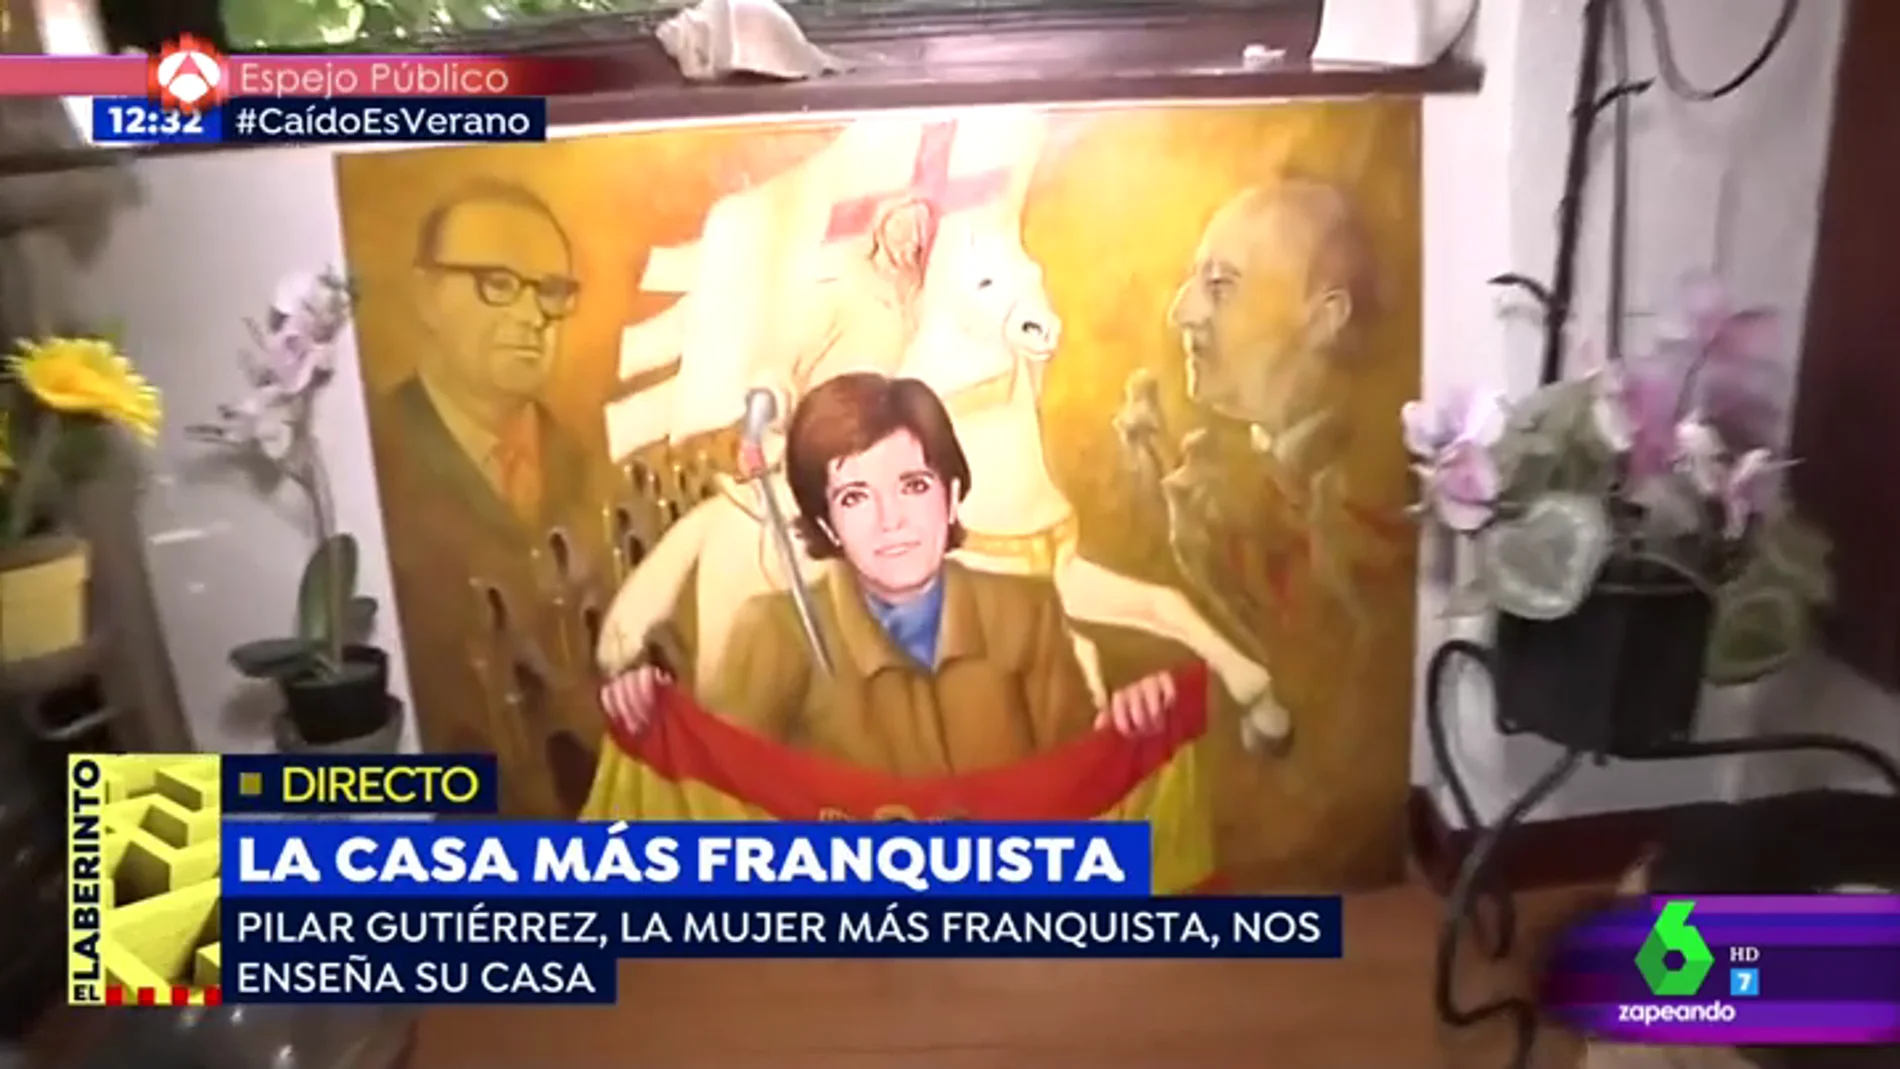 El gato 'claudillo', retratos de Franco, cojines con el escudo preconstitucional...: Este es el análisis del surrealista reportaje en la casa de "la mujer más franquista de España"